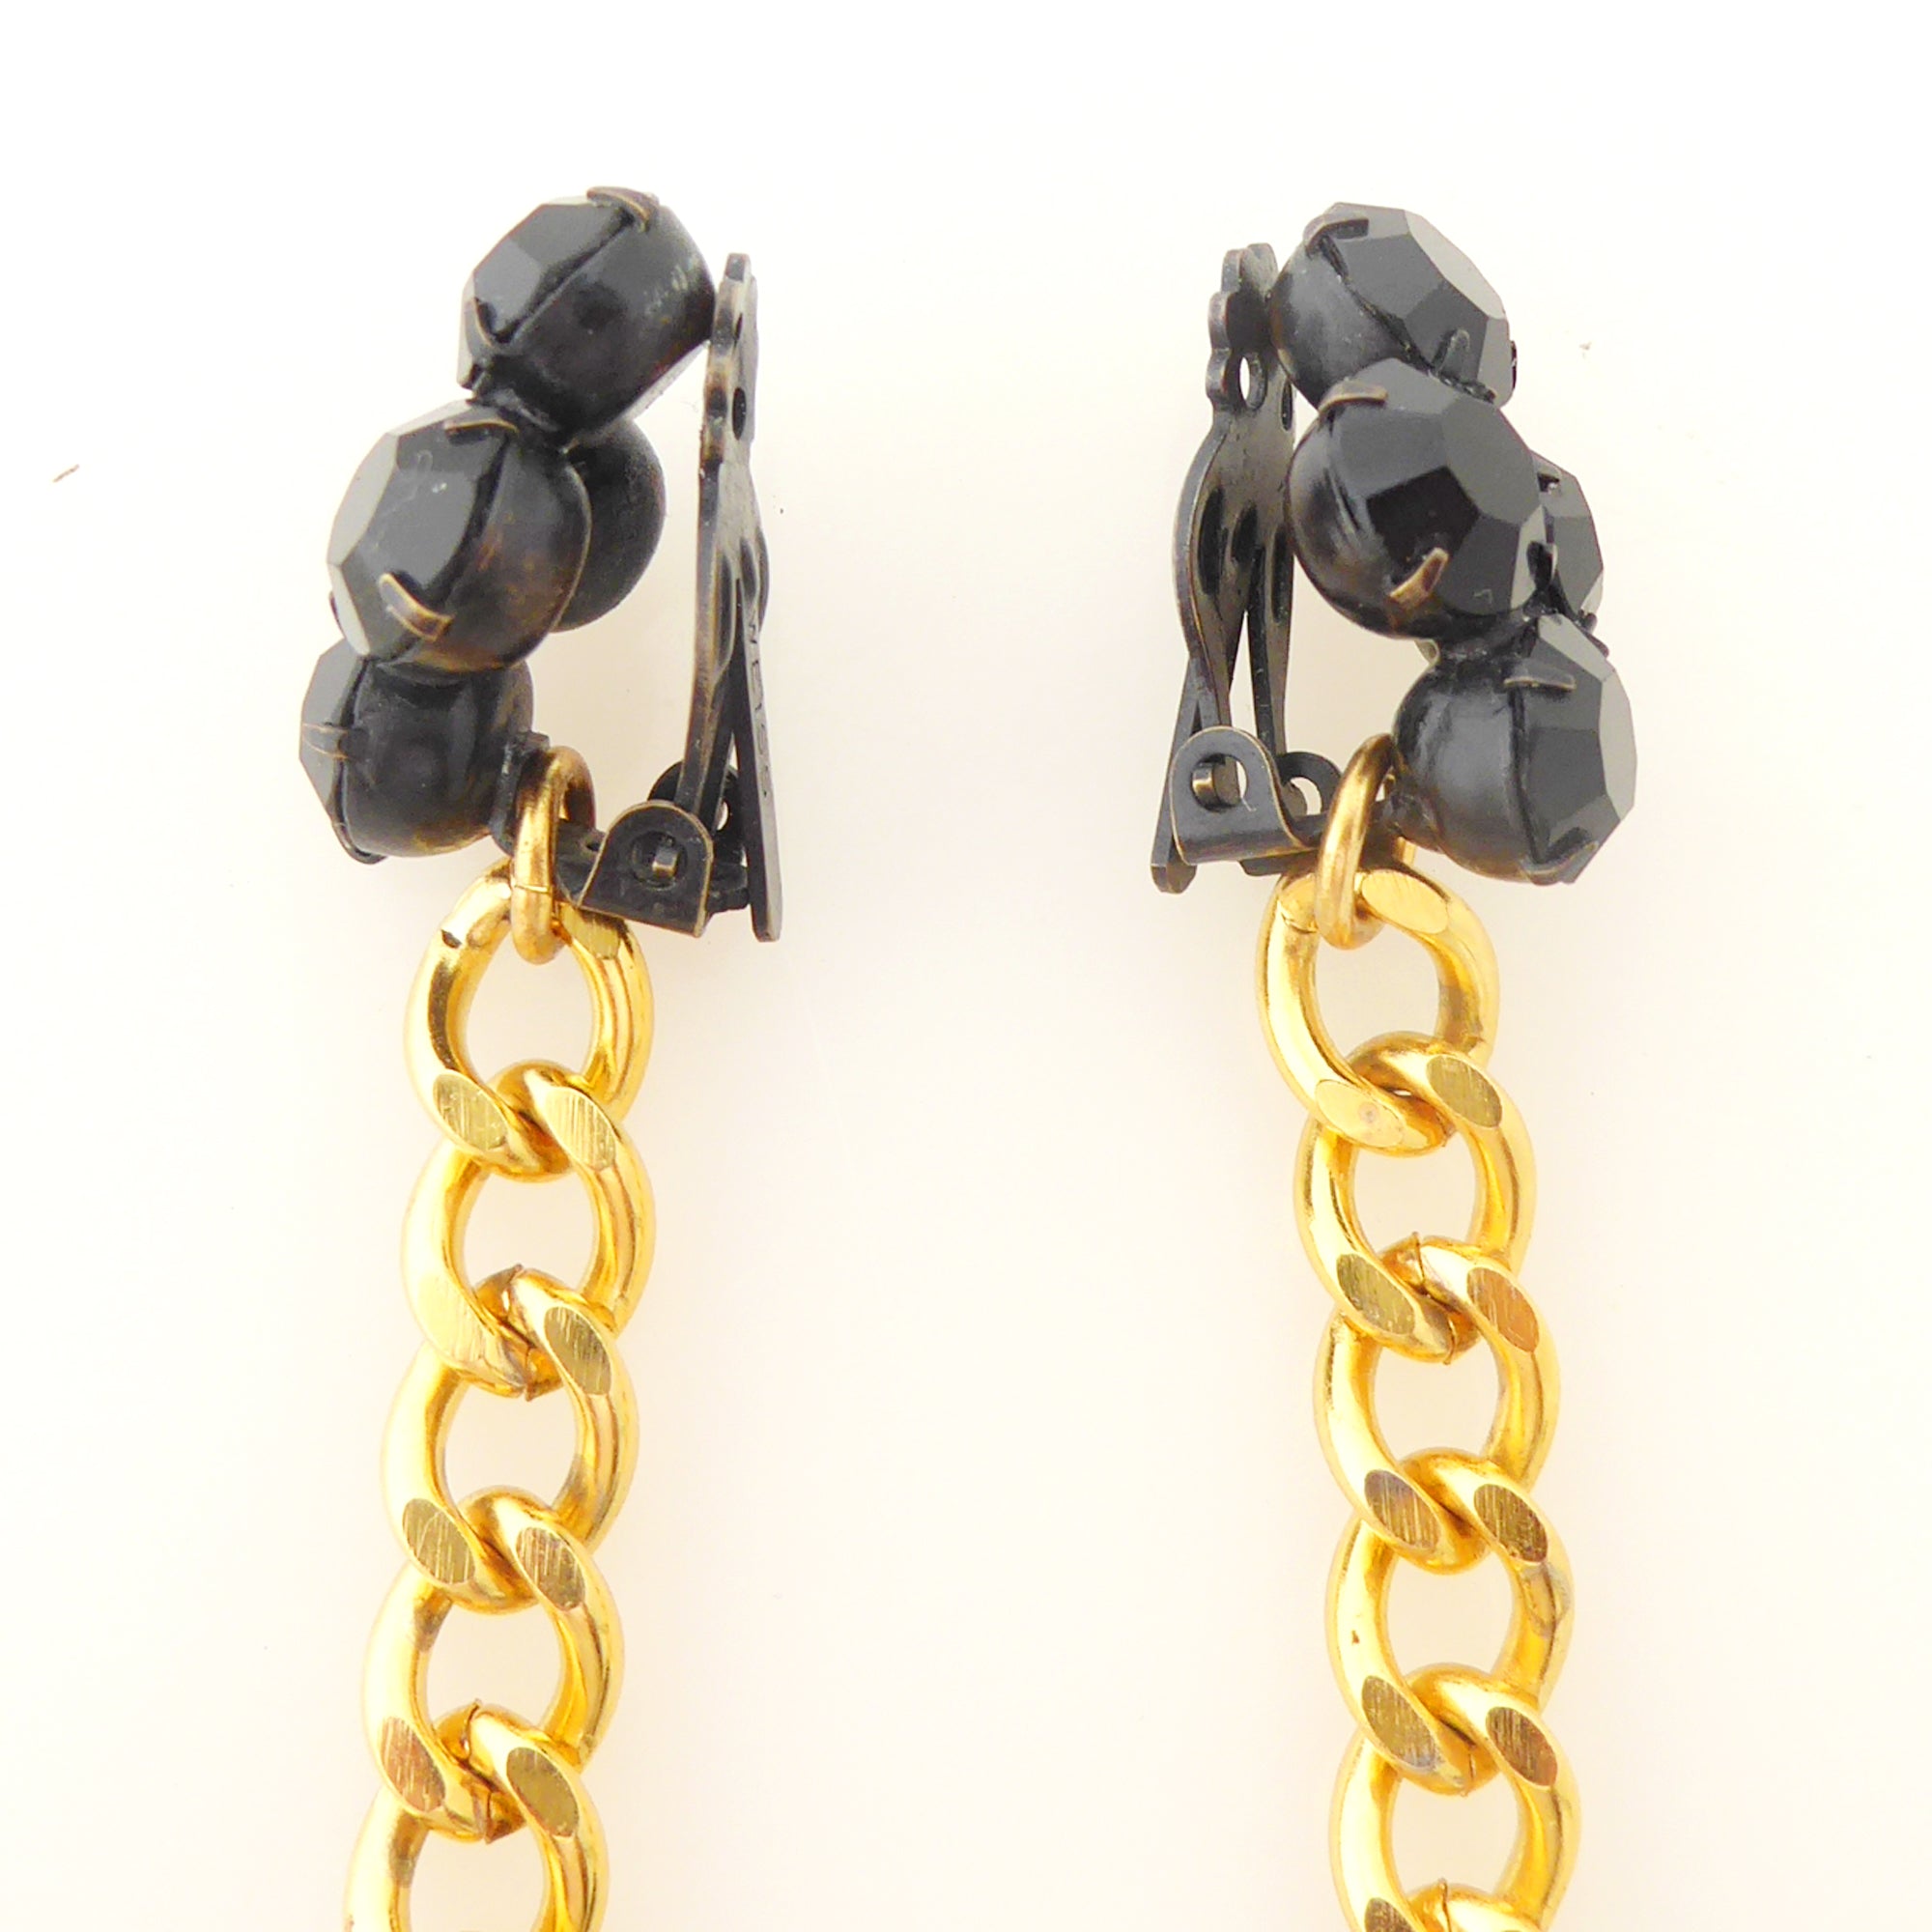    Black onyx teardrop earrings by Jenny Dayco 5